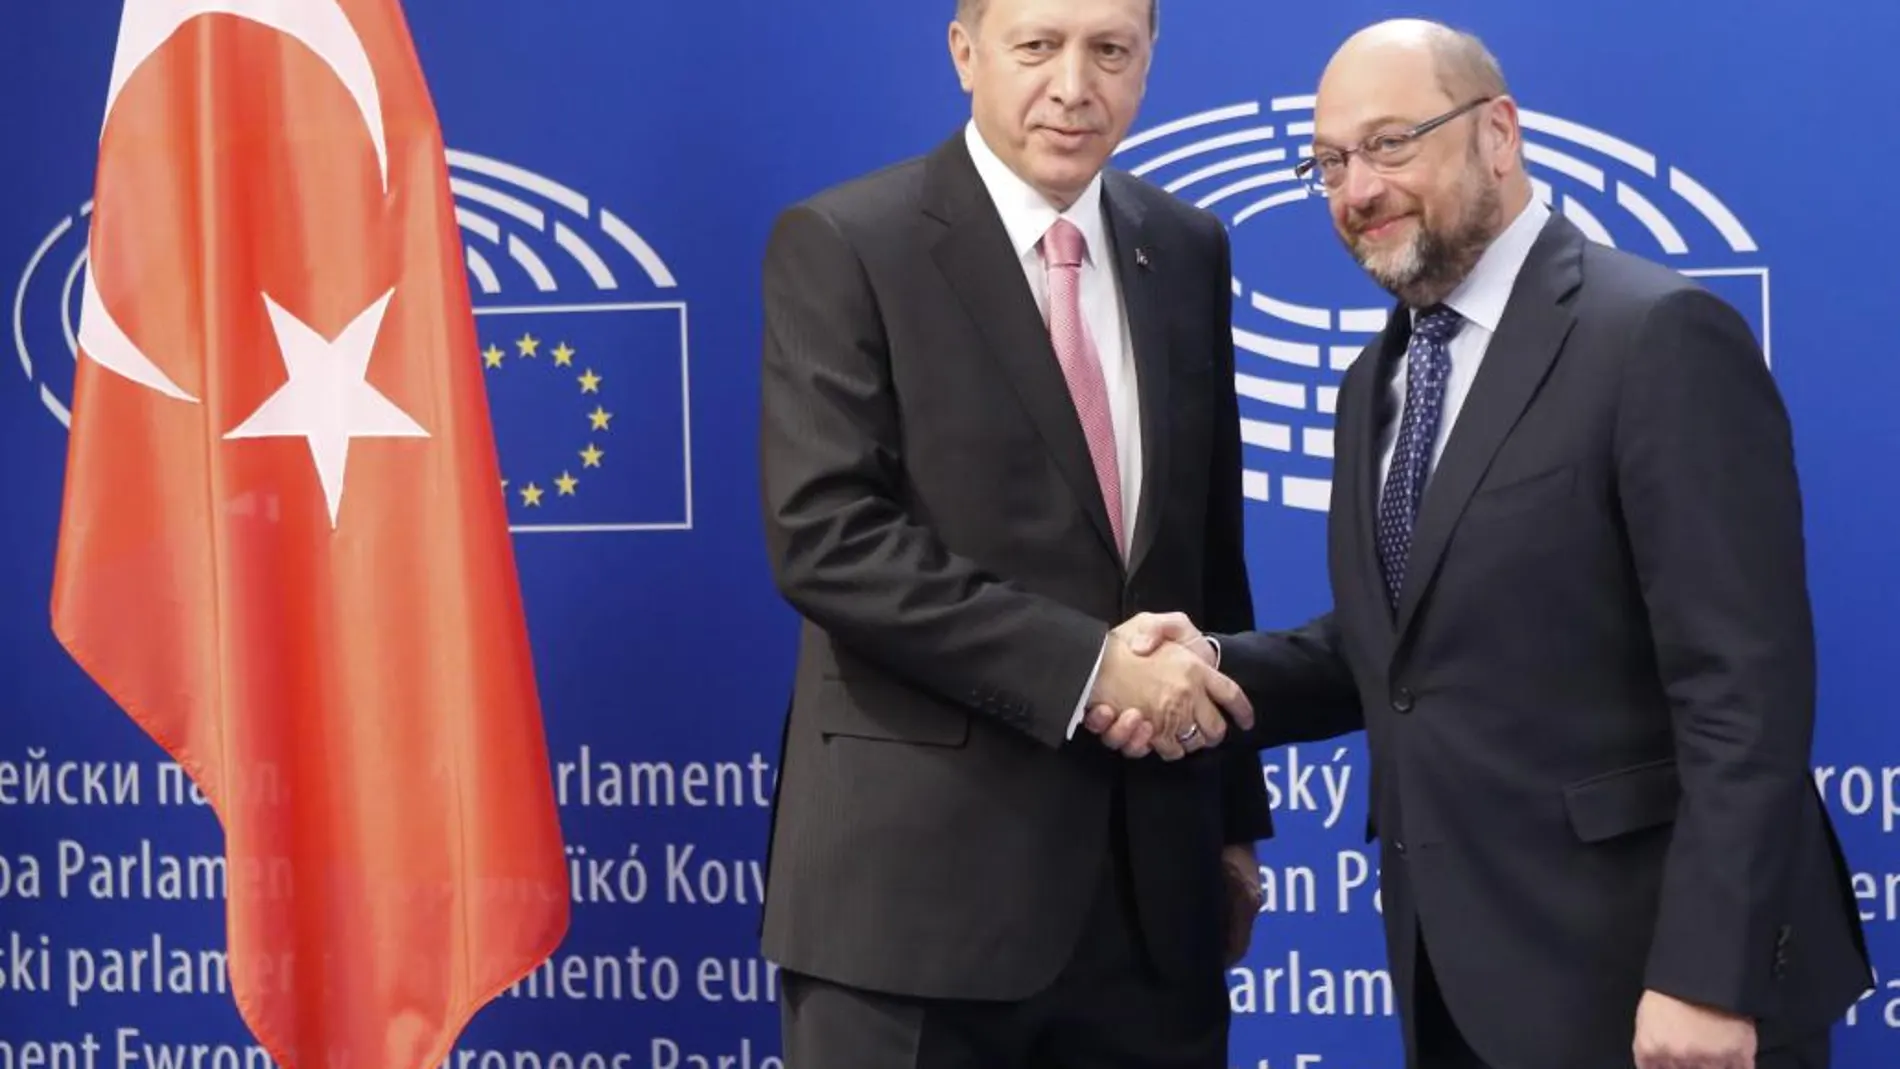 BRU201. BRUSELAS (BÉLGICA), 05/10/2015.- El presidente del Parlamento Europeo (PE), Martin Schulz (dcha), recibe al presidente turco Recep Tayyip Erdogan, a su llegada a la sede del PE en Bruselas, Bélgica, el 5 de octubre del 2015. EFE/Olivier Hoslet